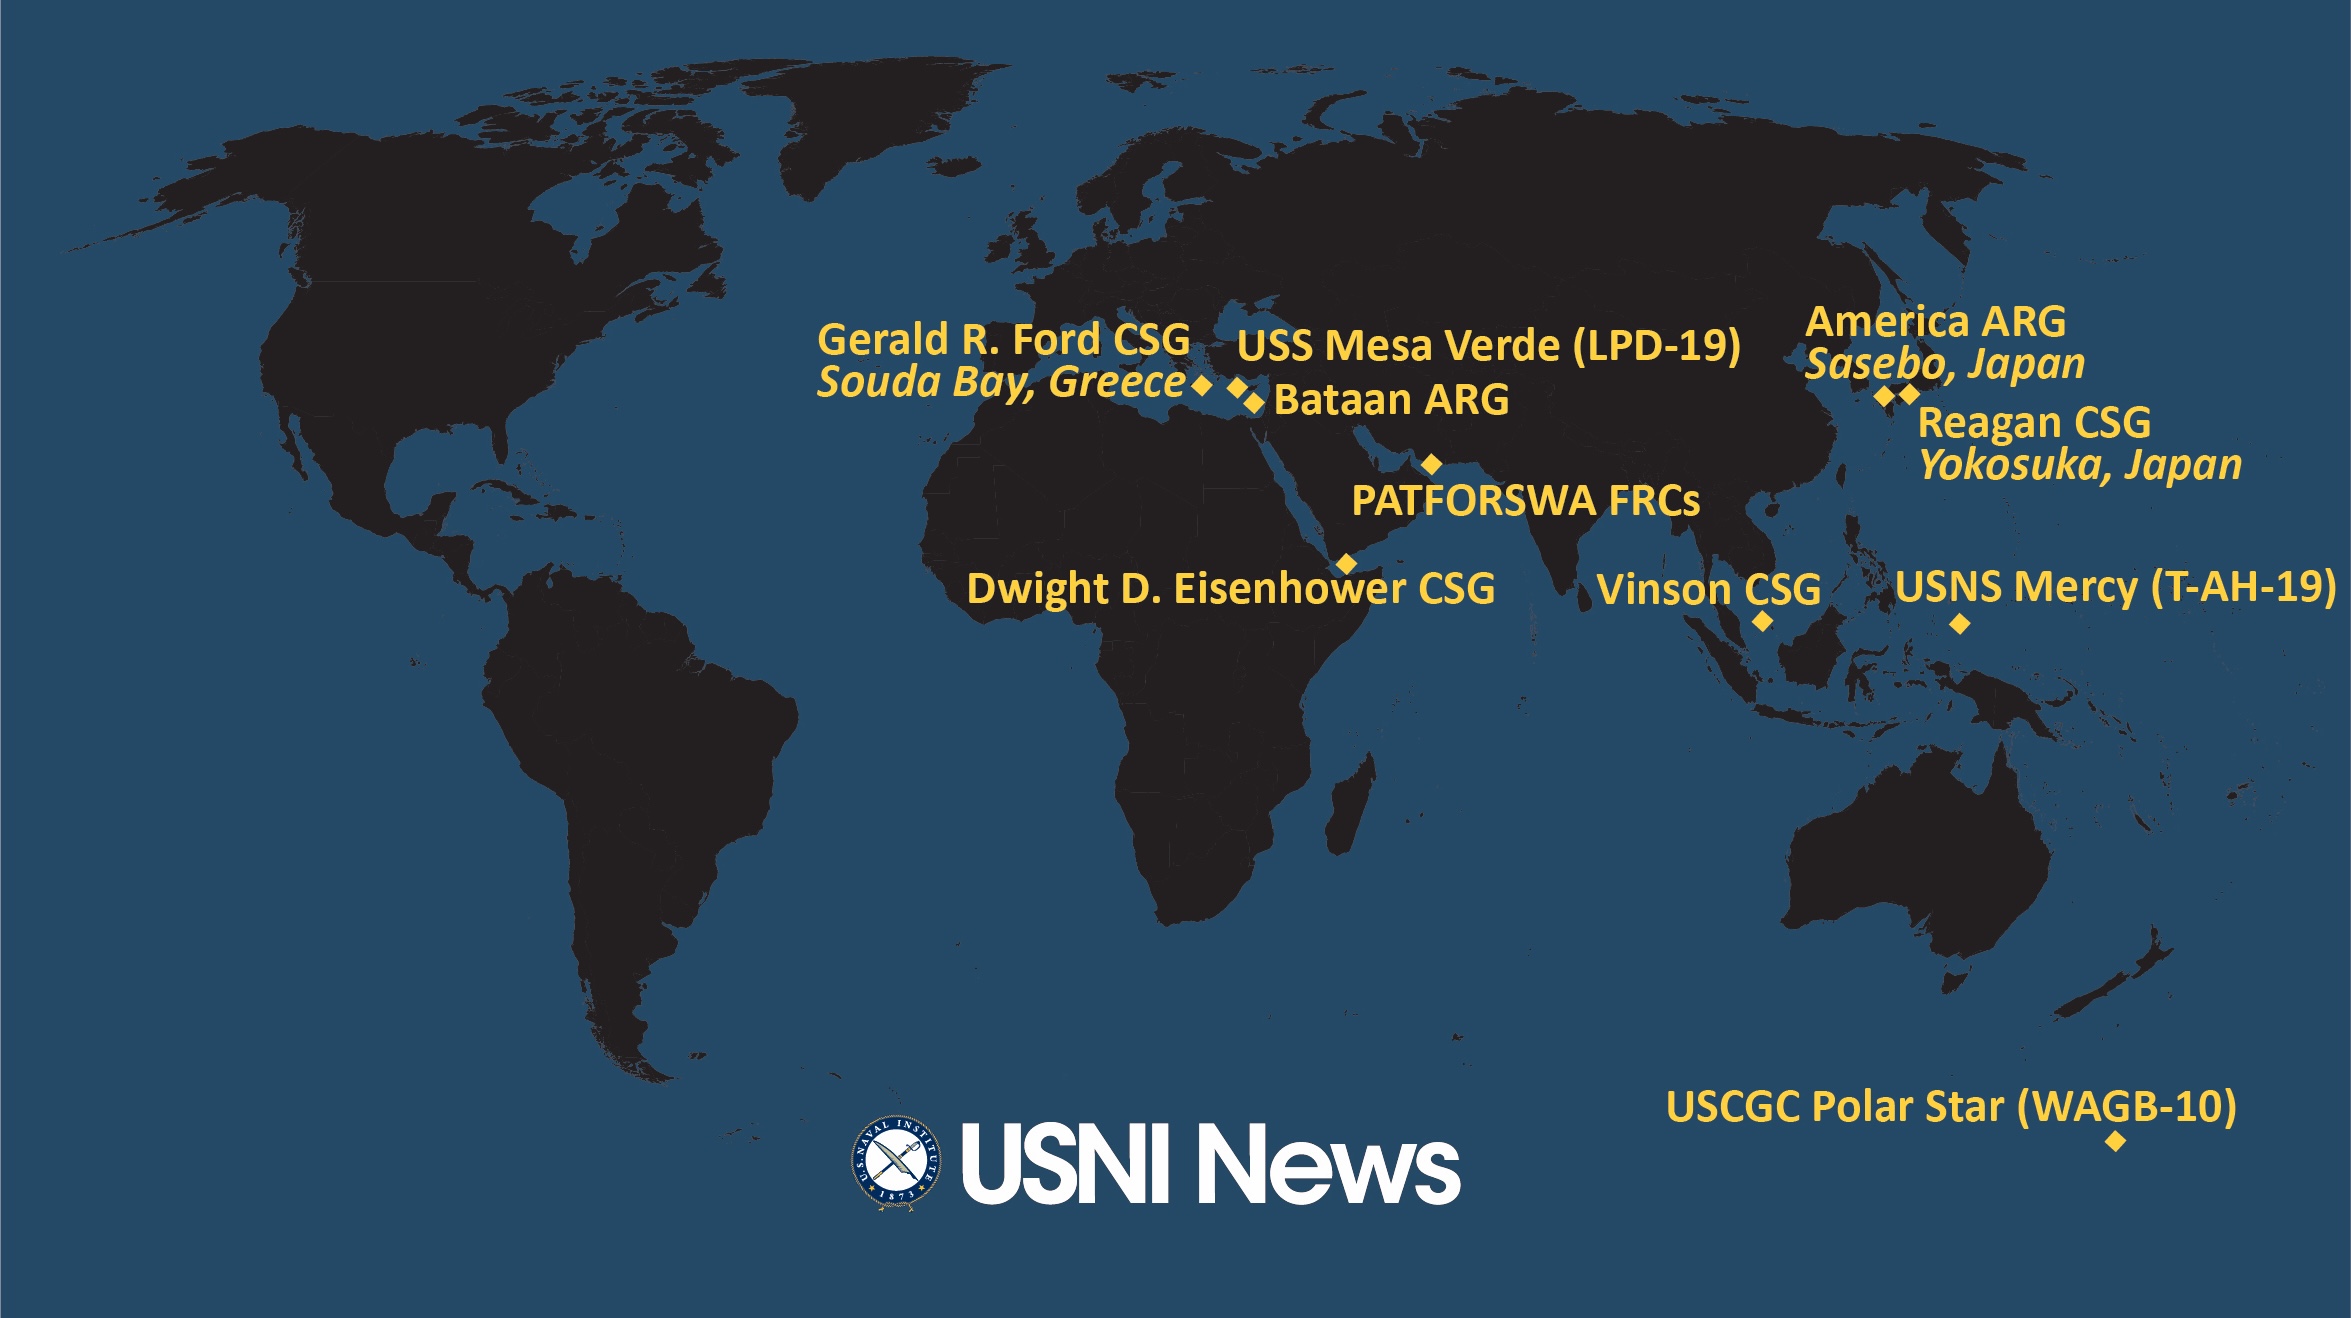 USNI News - Maritime News and Analysis